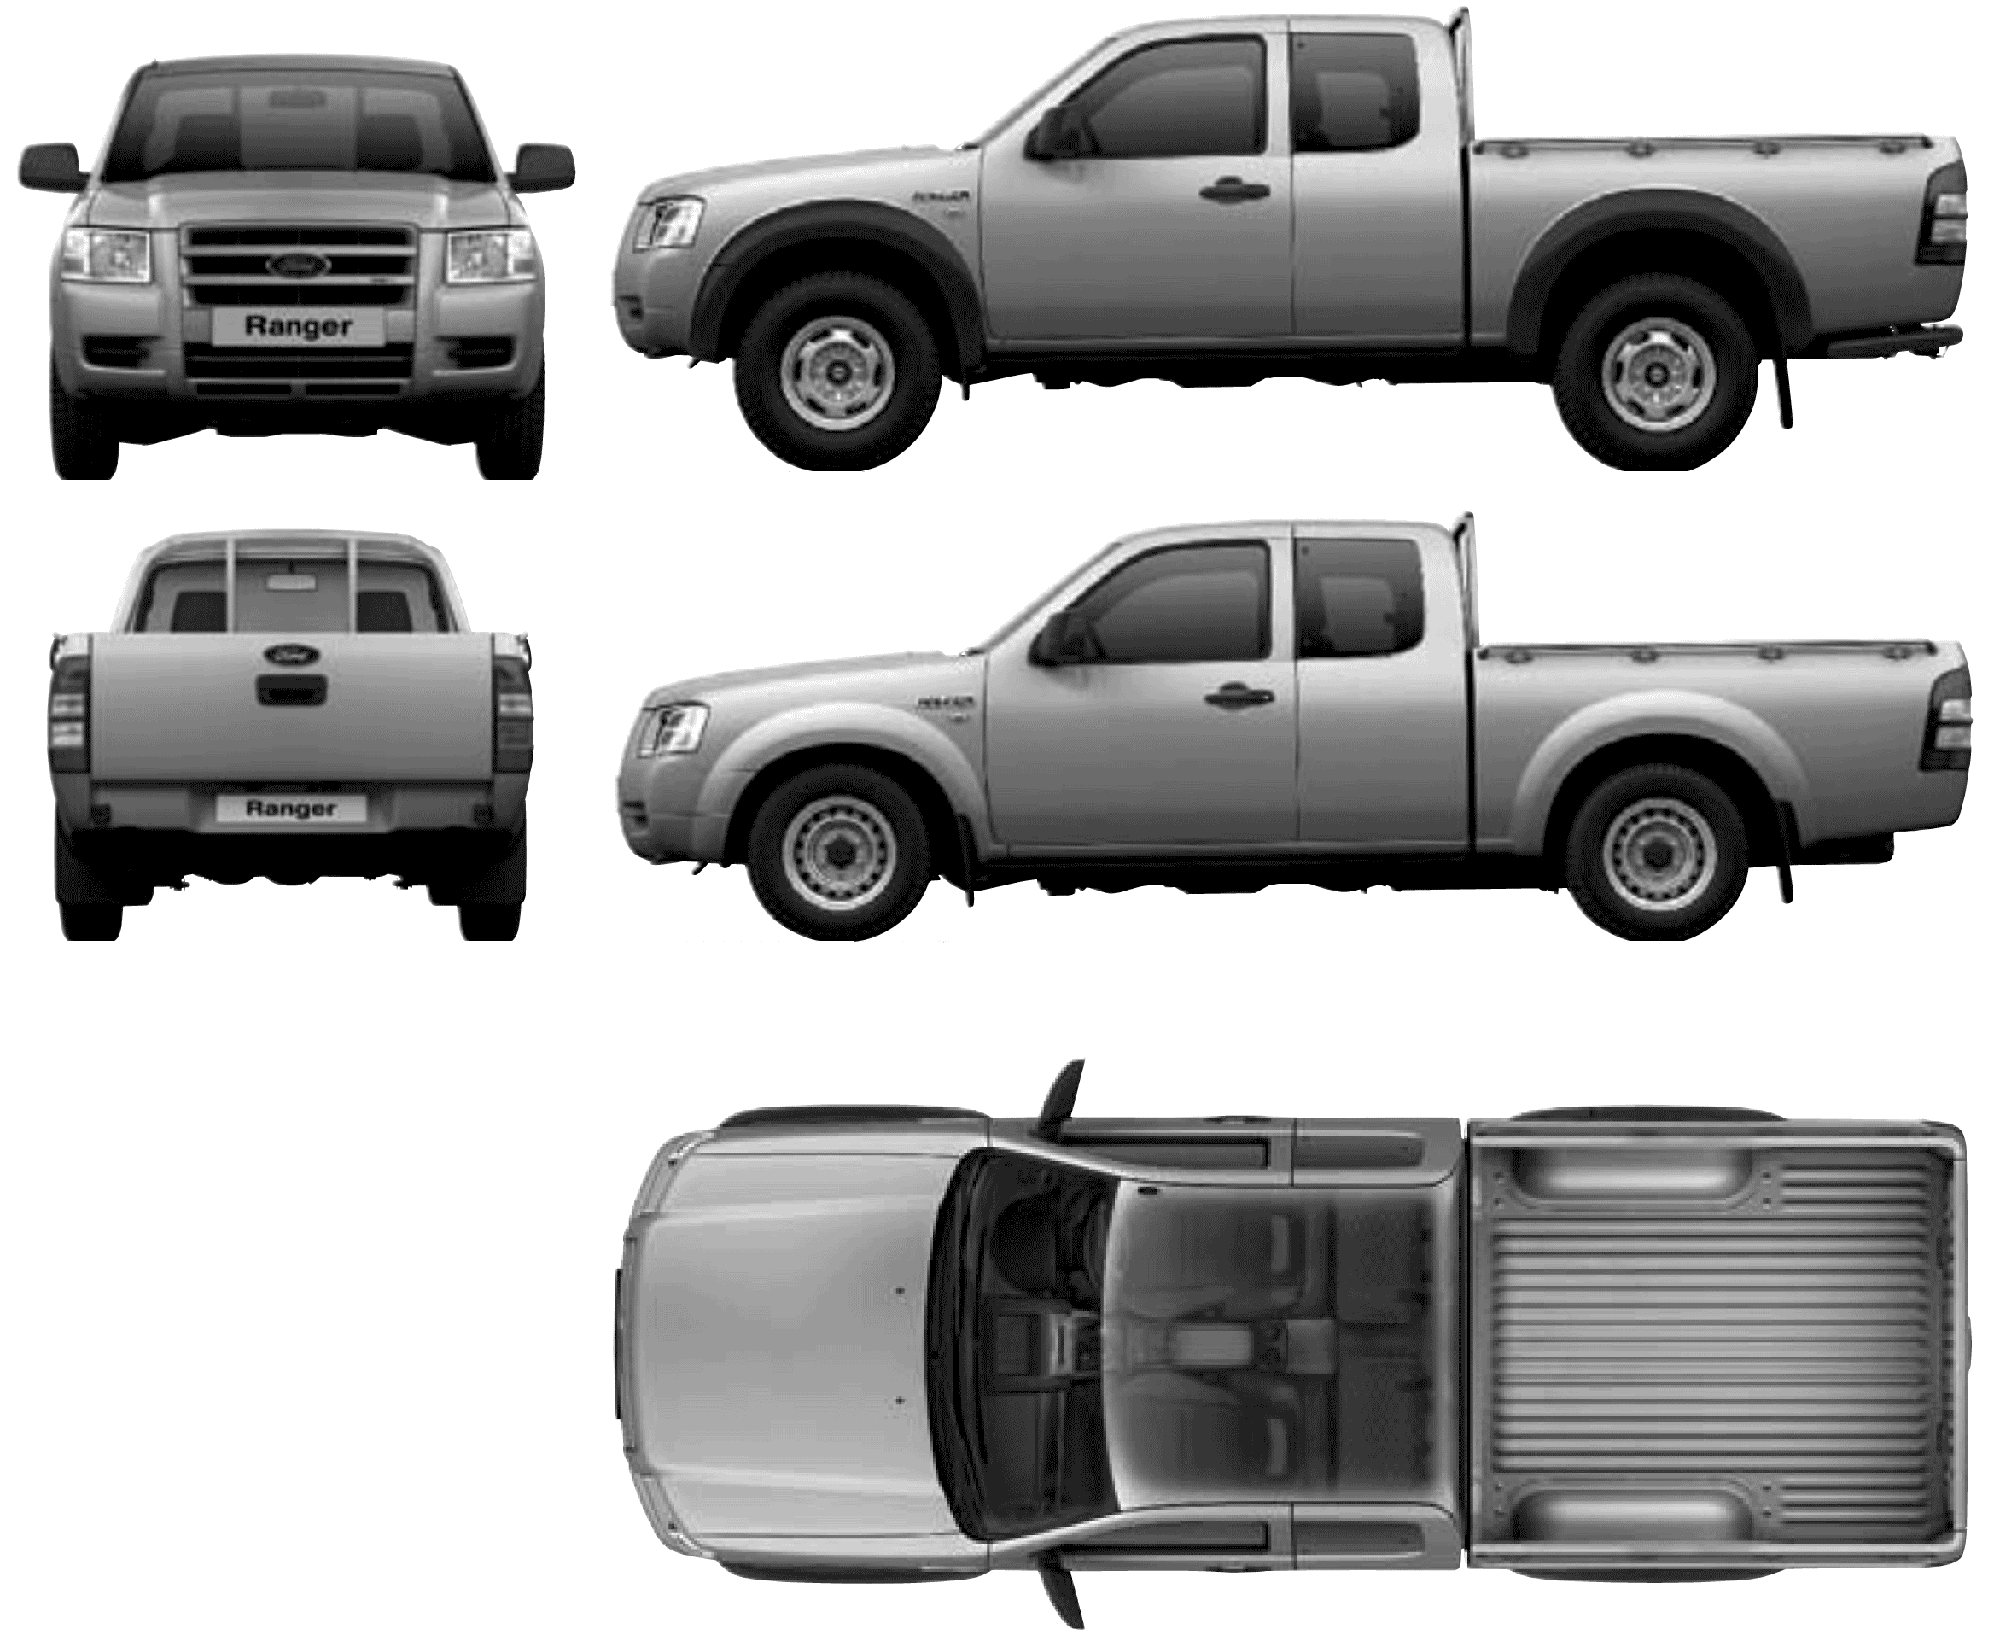 Ford Ranger 2008 Modifikasi. Harga Ford Ranger 2008, Spesifikasi Dan Review Lengkap